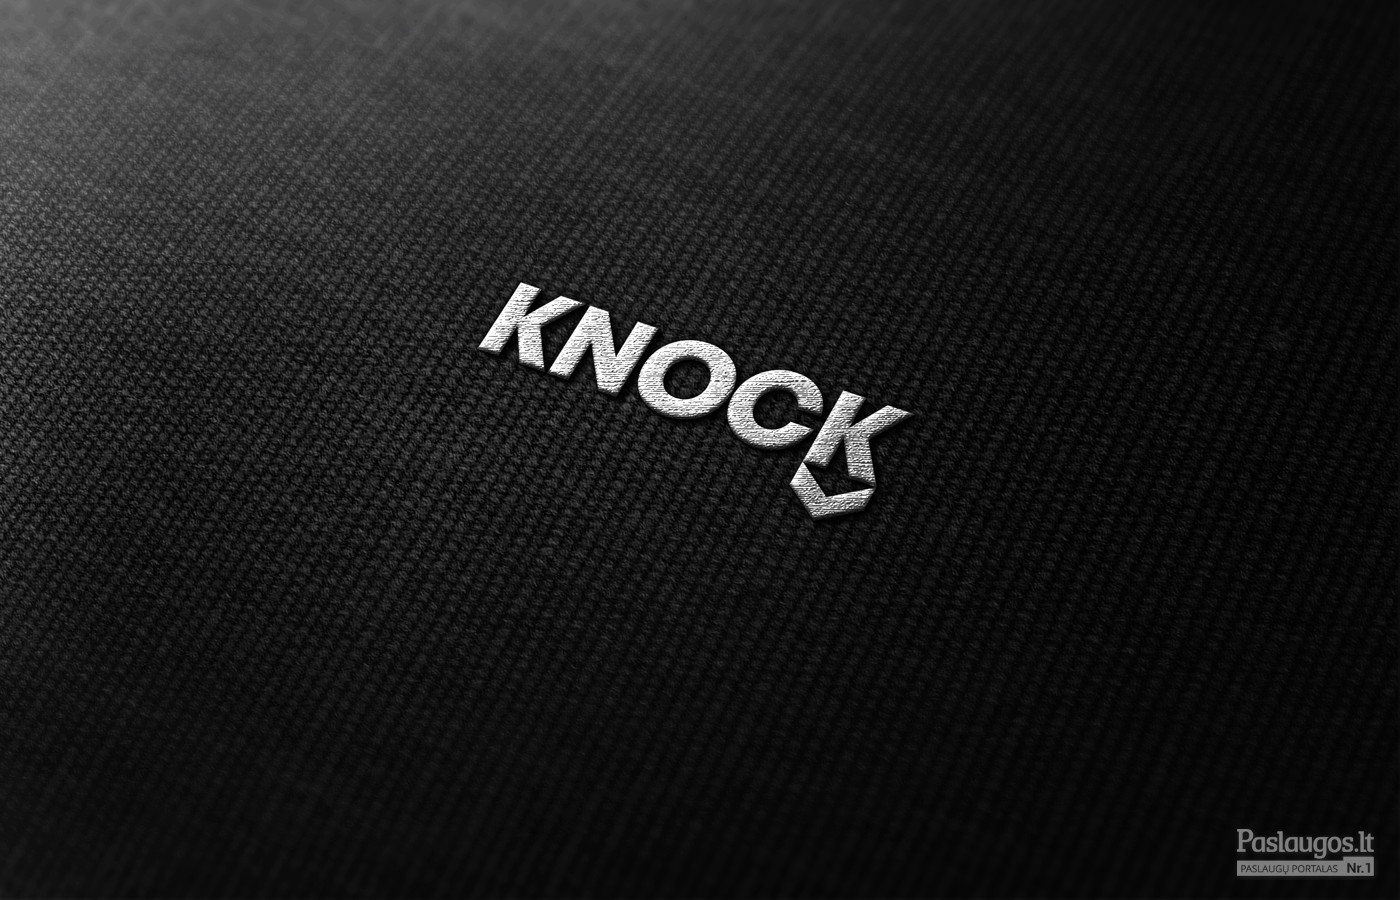 Knock Down - sportinė apranga   |   Logotipų kūrimas - www.glogo.eu - logo creation.